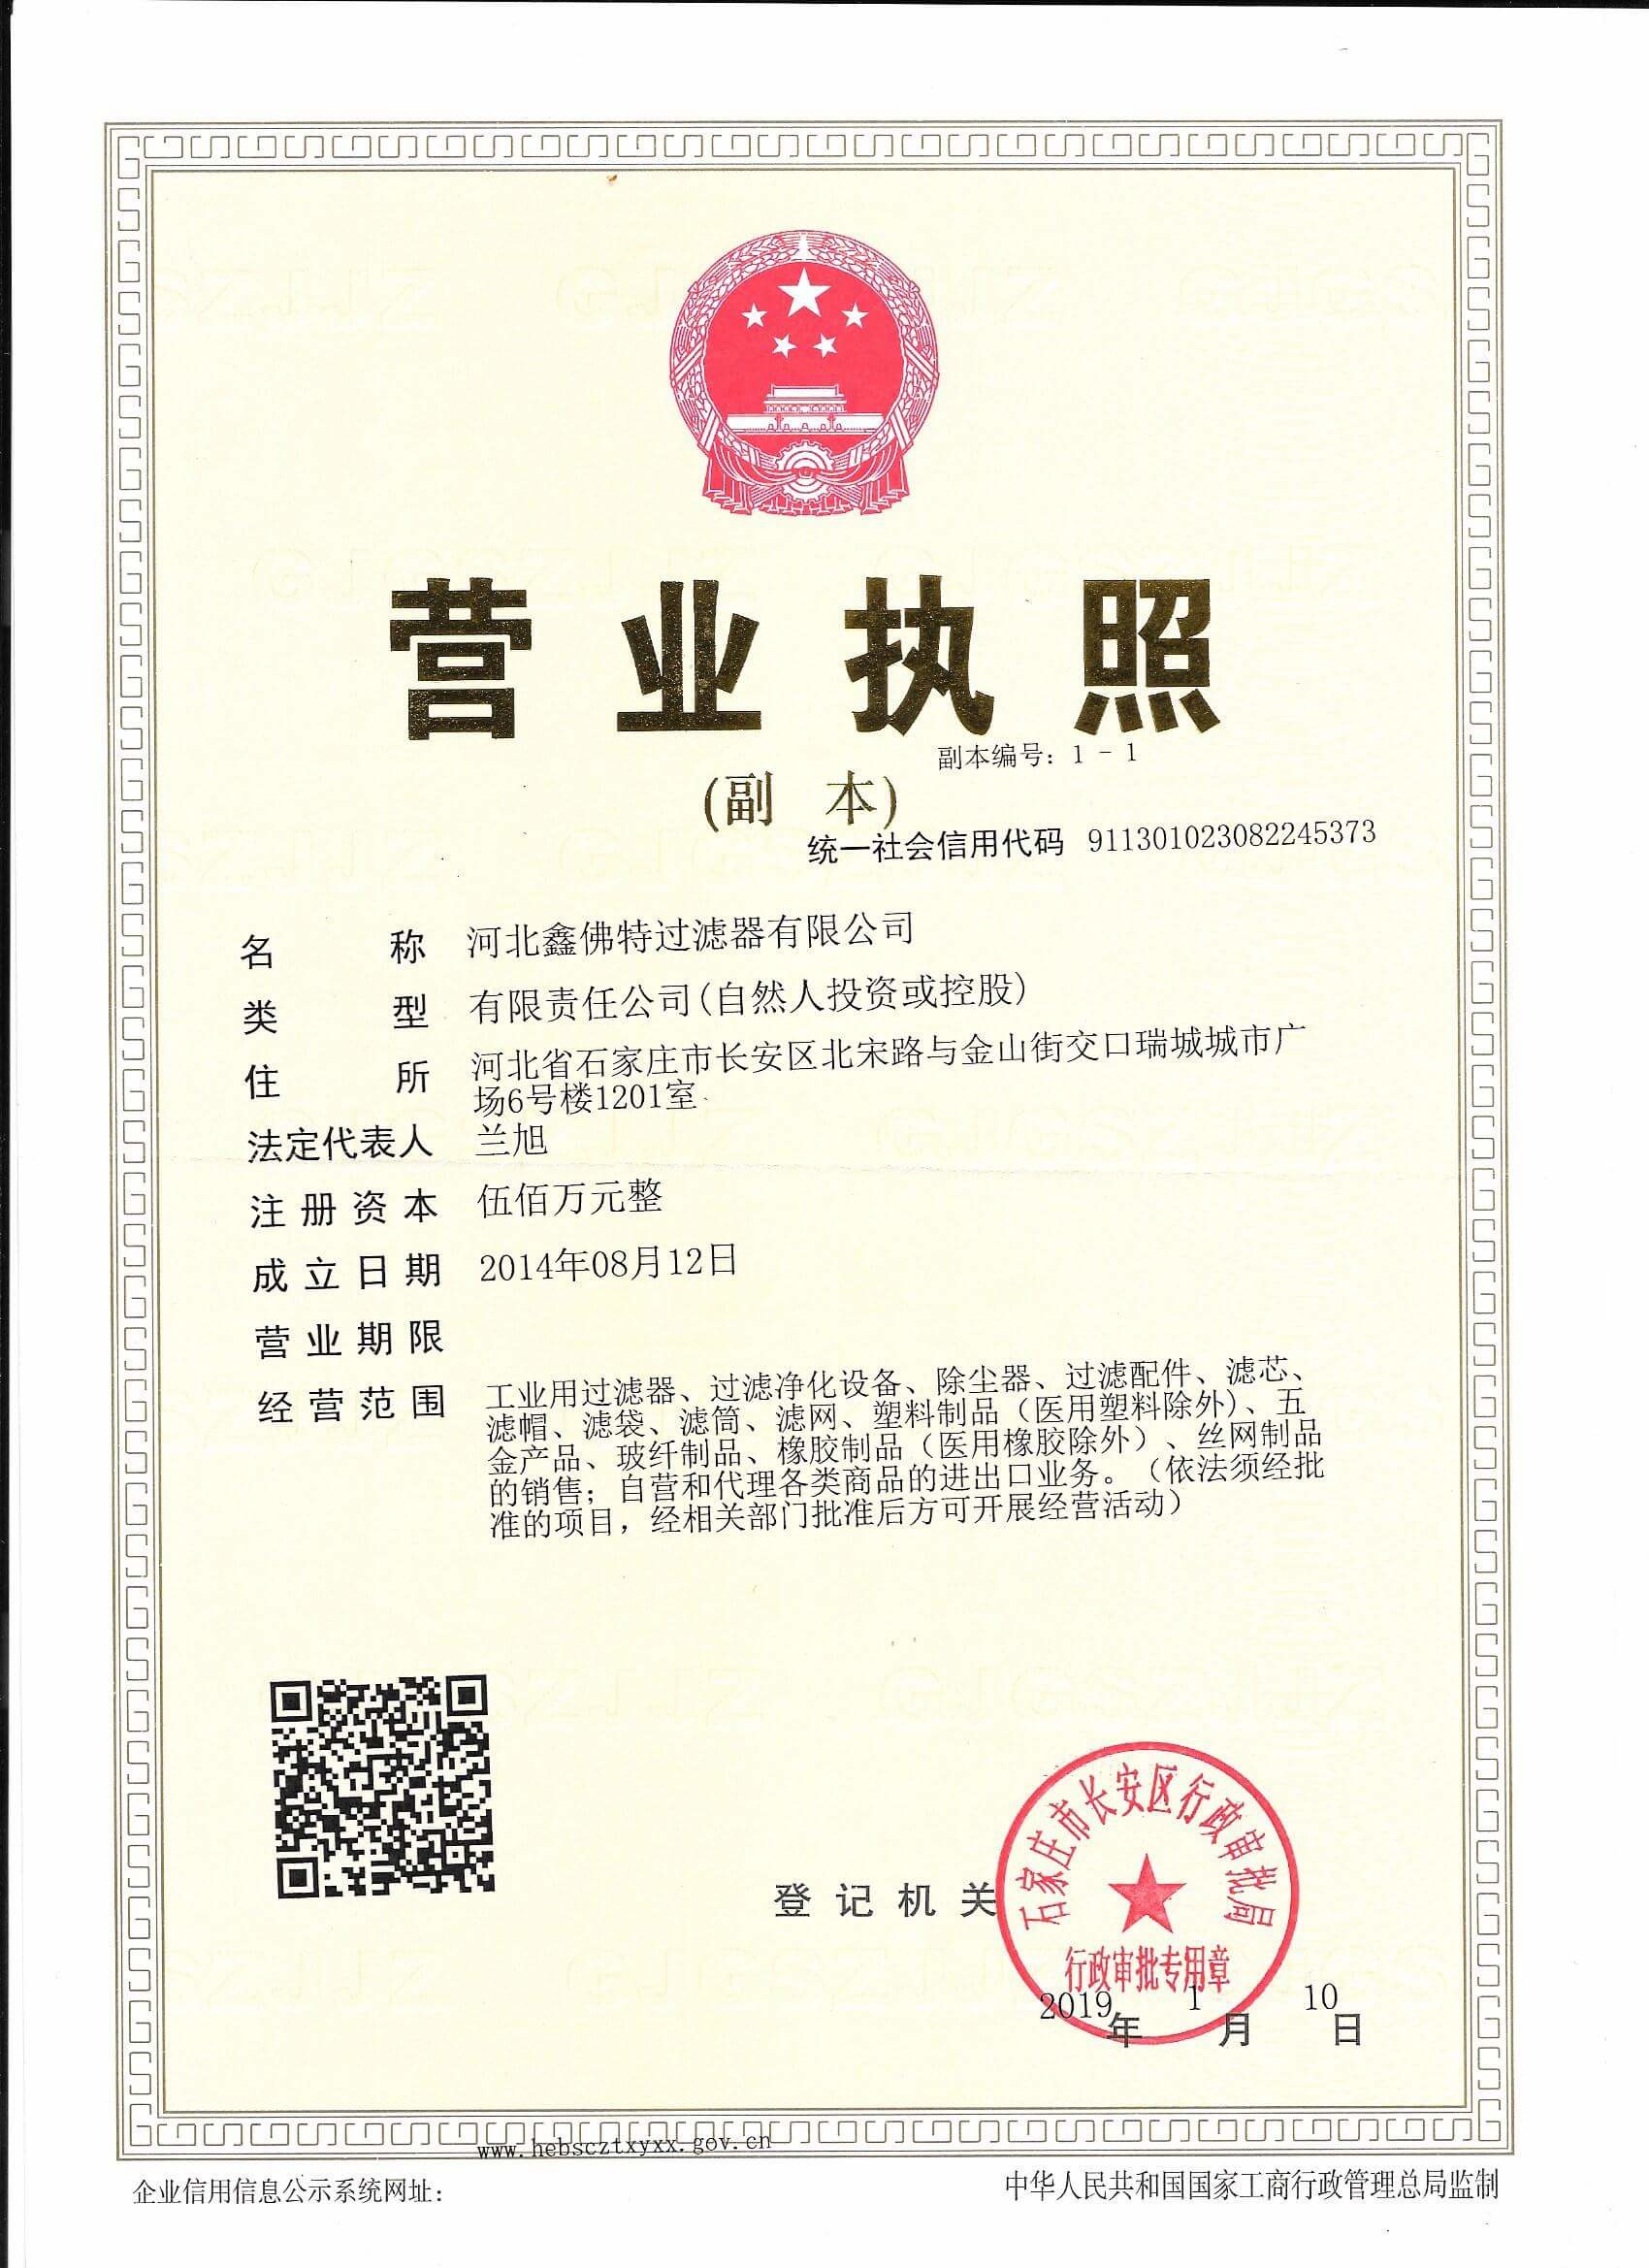 Hebei Sinft Filter Co., Ltd. Certifications